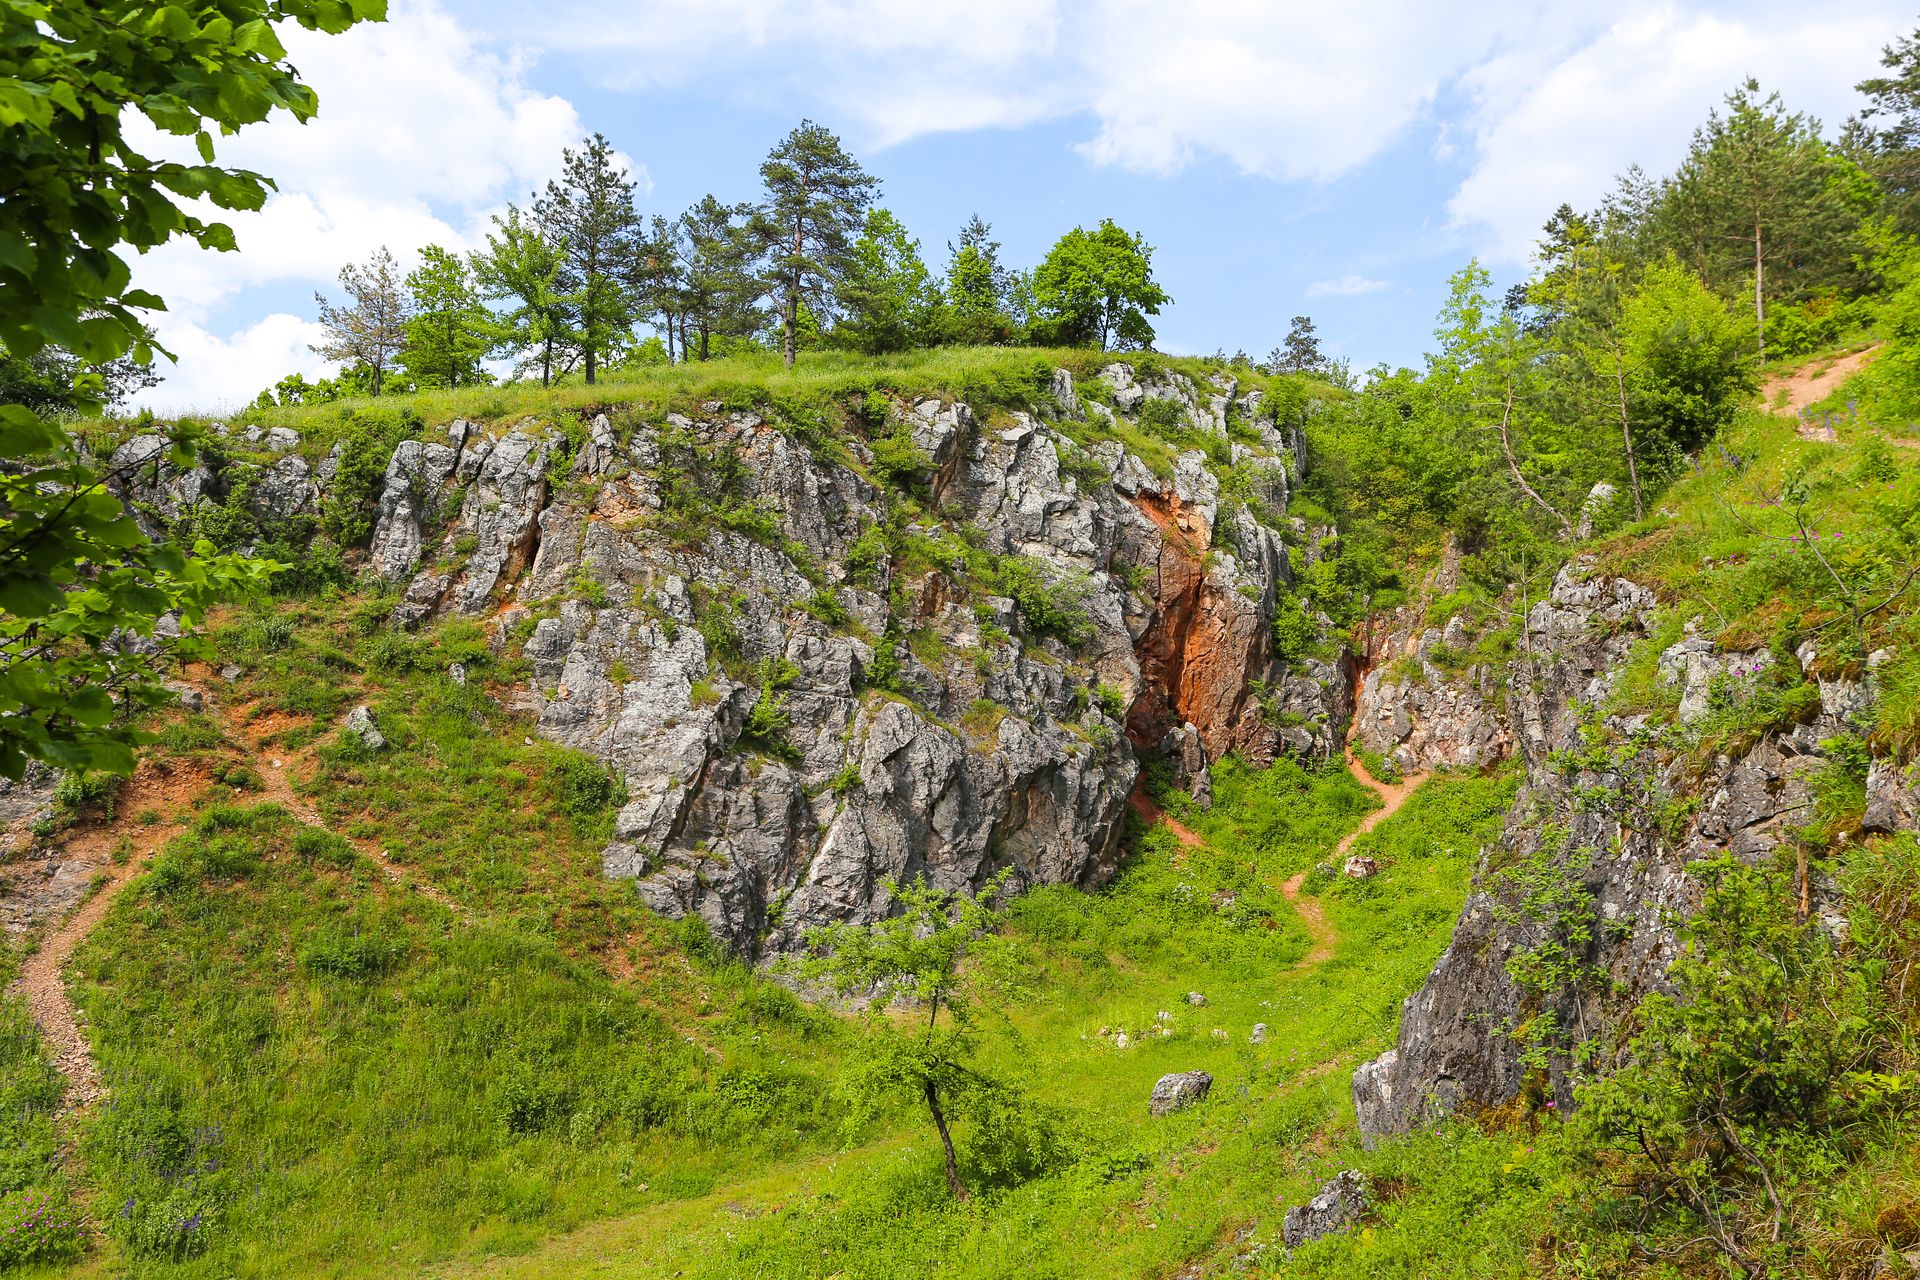 Zelejowa, 29.05.2016 r. Rezerwat przyrody Gora Zelejowa. Fot. Lukasz Zarzycki / www.lukaszzarzycki.pl / www.geopark.pl